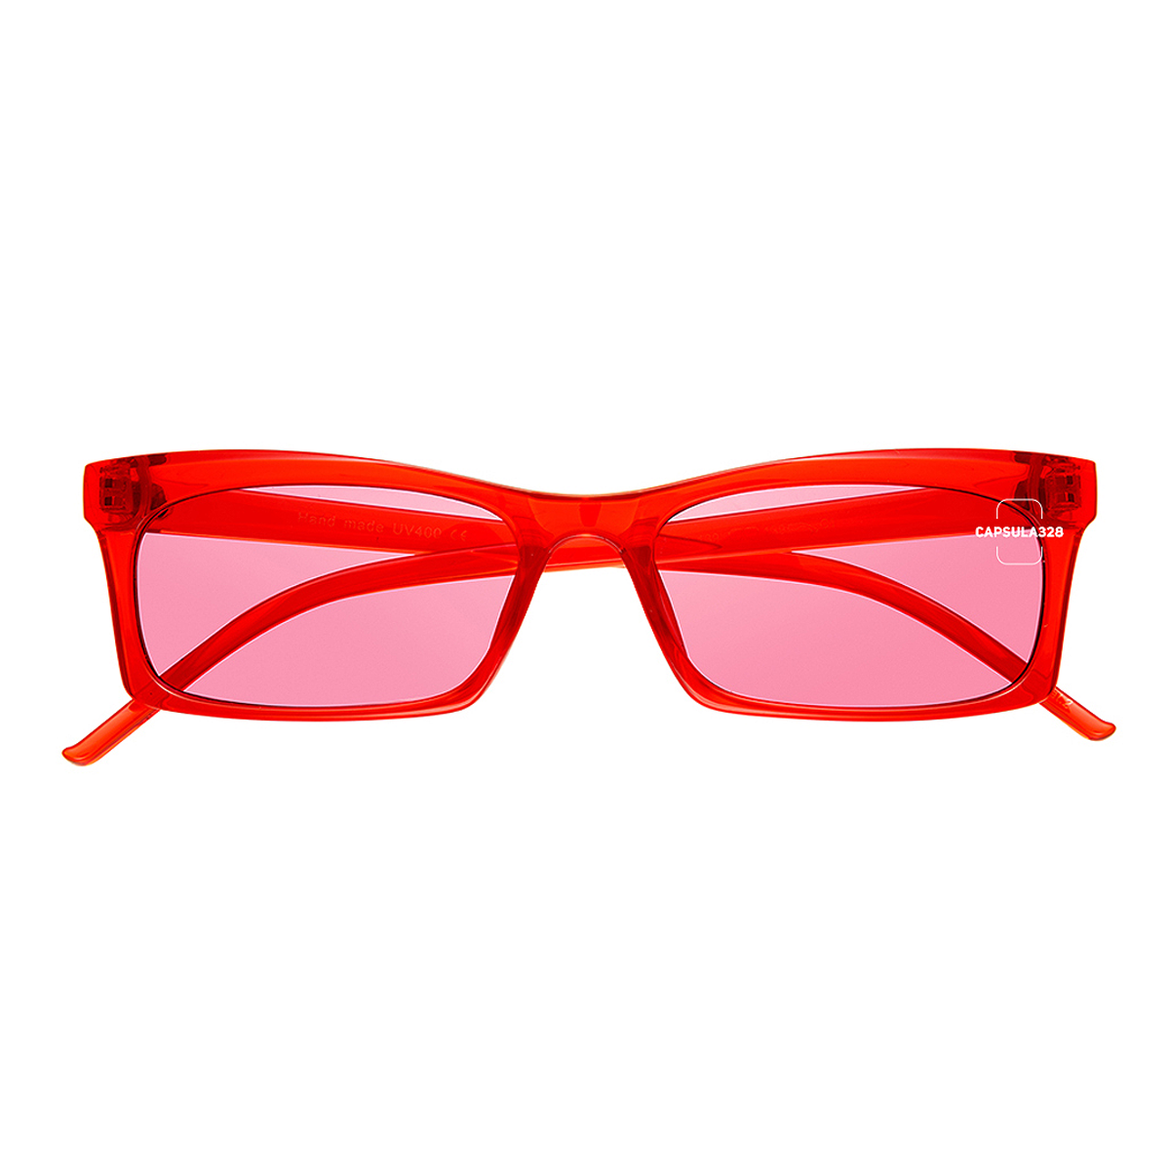 Сонцезахисні окуляри Owl Eye 5701